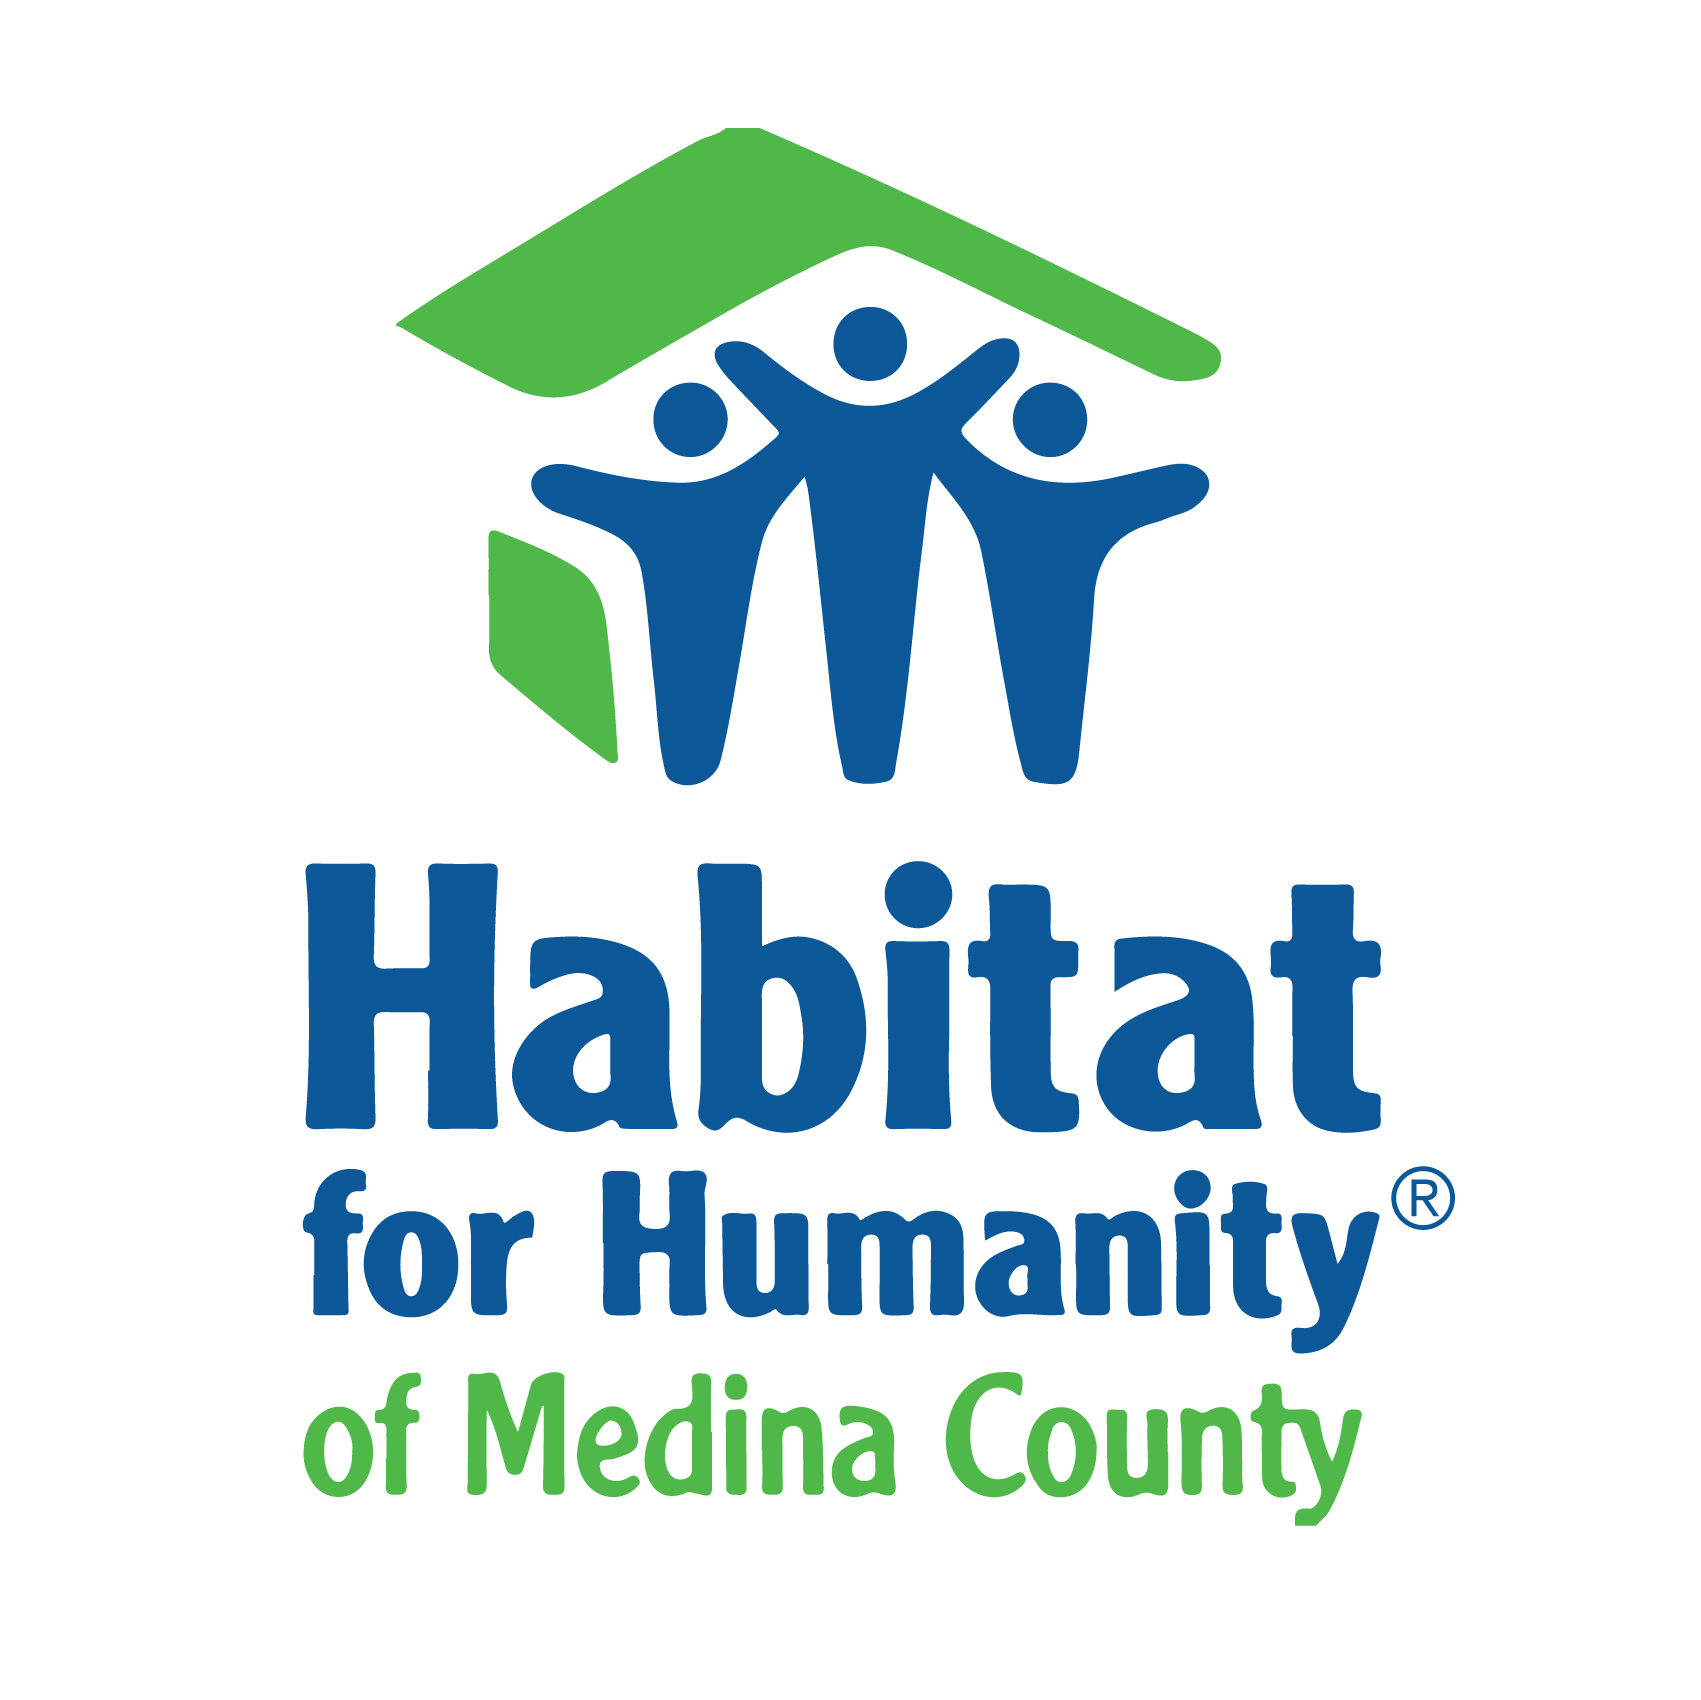 Habitat for Humanity of Medina County